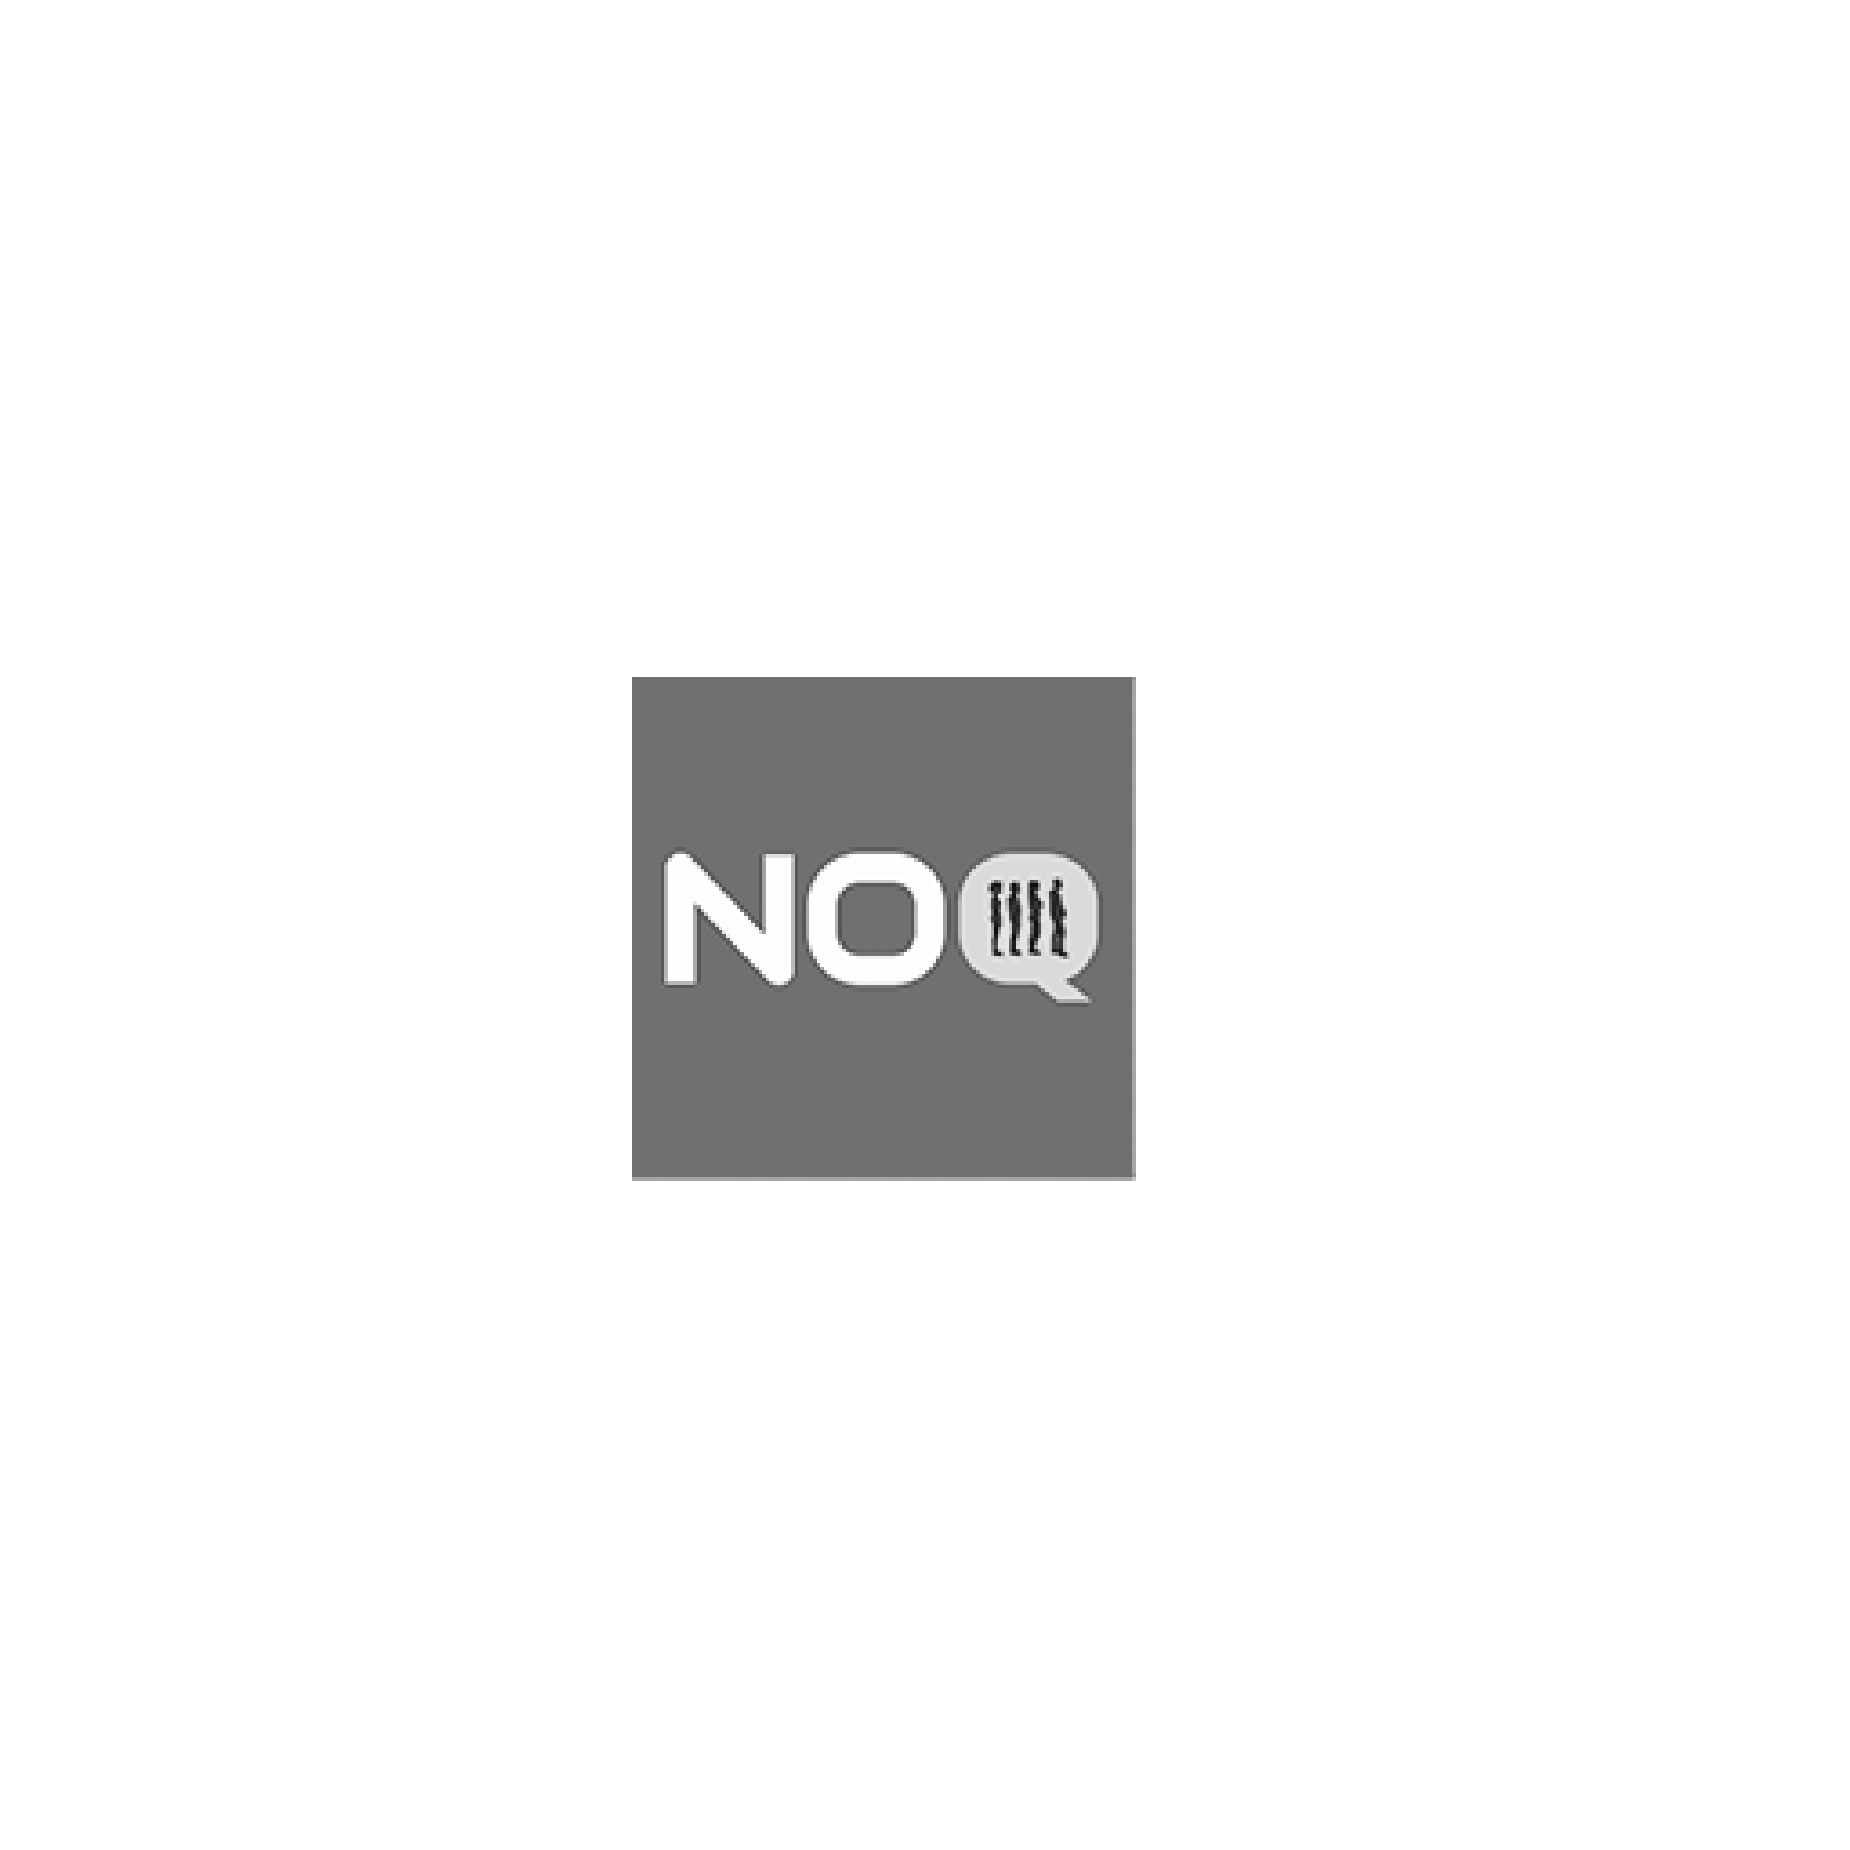 noq-01.png